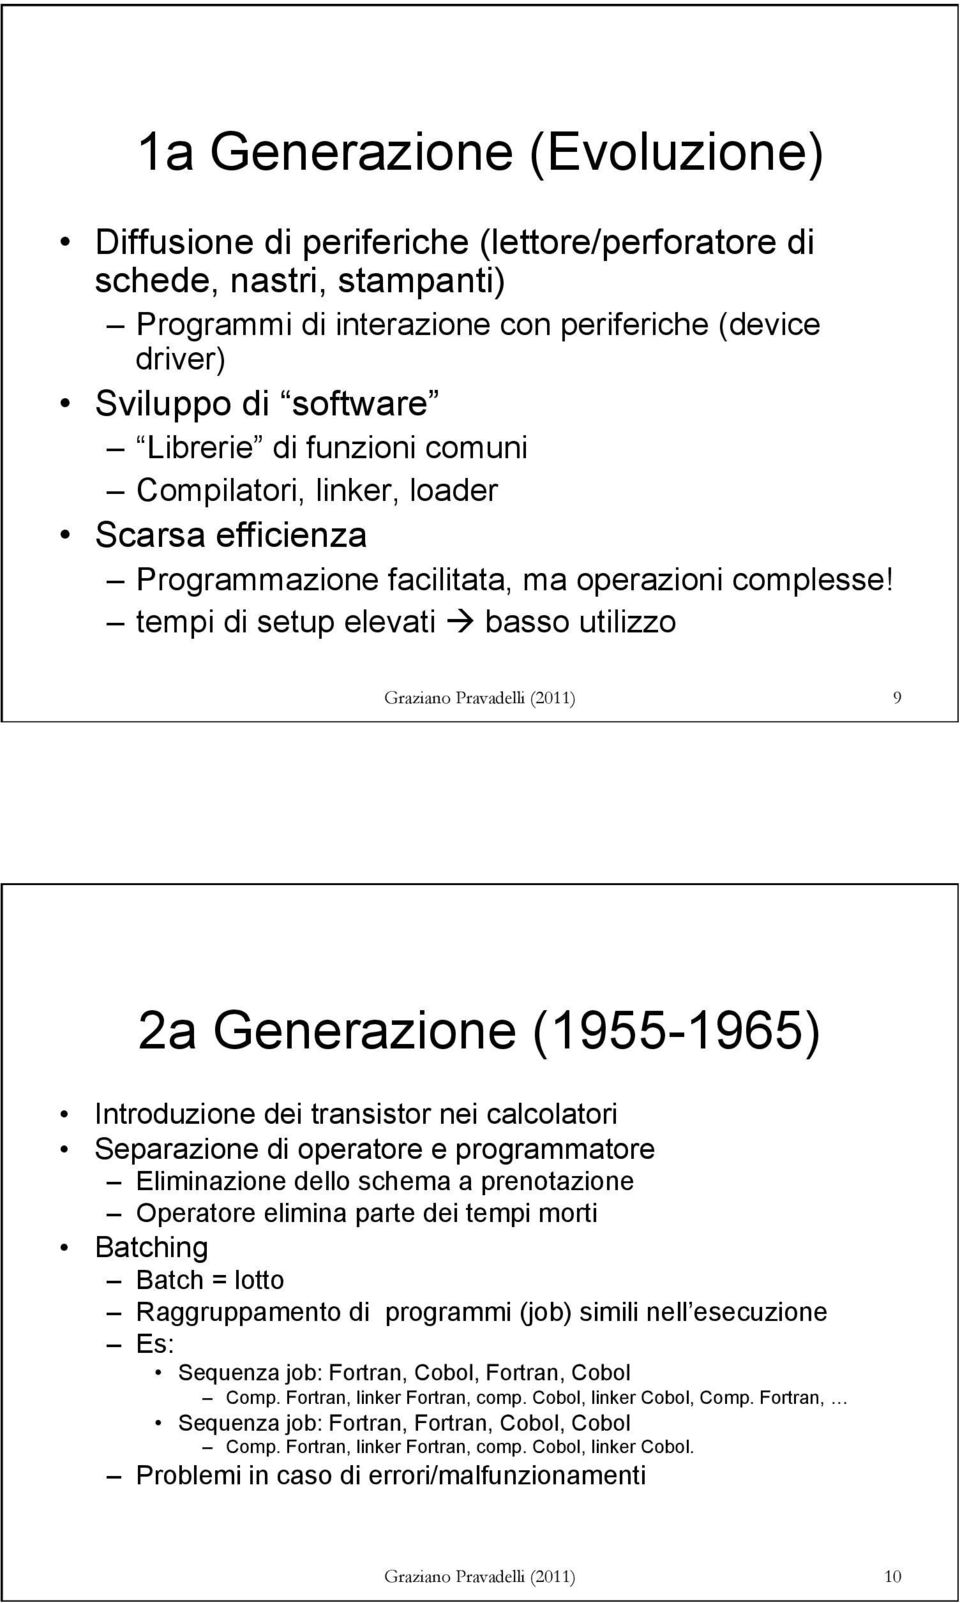 tempi di setup elevati à basso utilizzo 9 2a Generazione (1955-1965) Introduzione dei transistor nei calcolatori Separazione di operatore e programmatore Eliminazione dello schema a prenotazione